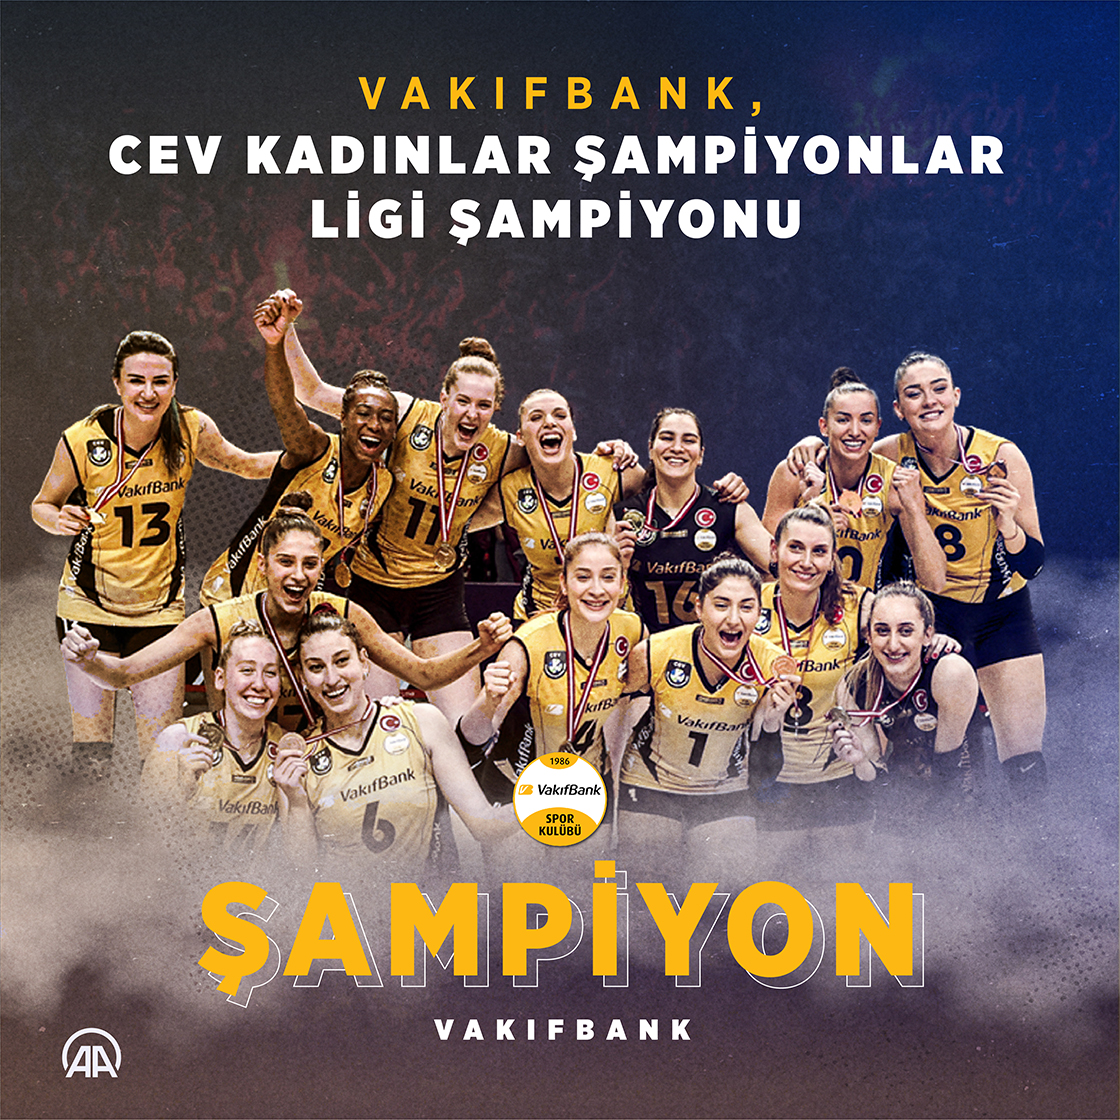 VakıfBank, CEV Kadınlar Şampiyonlar Ligi şampiyonu